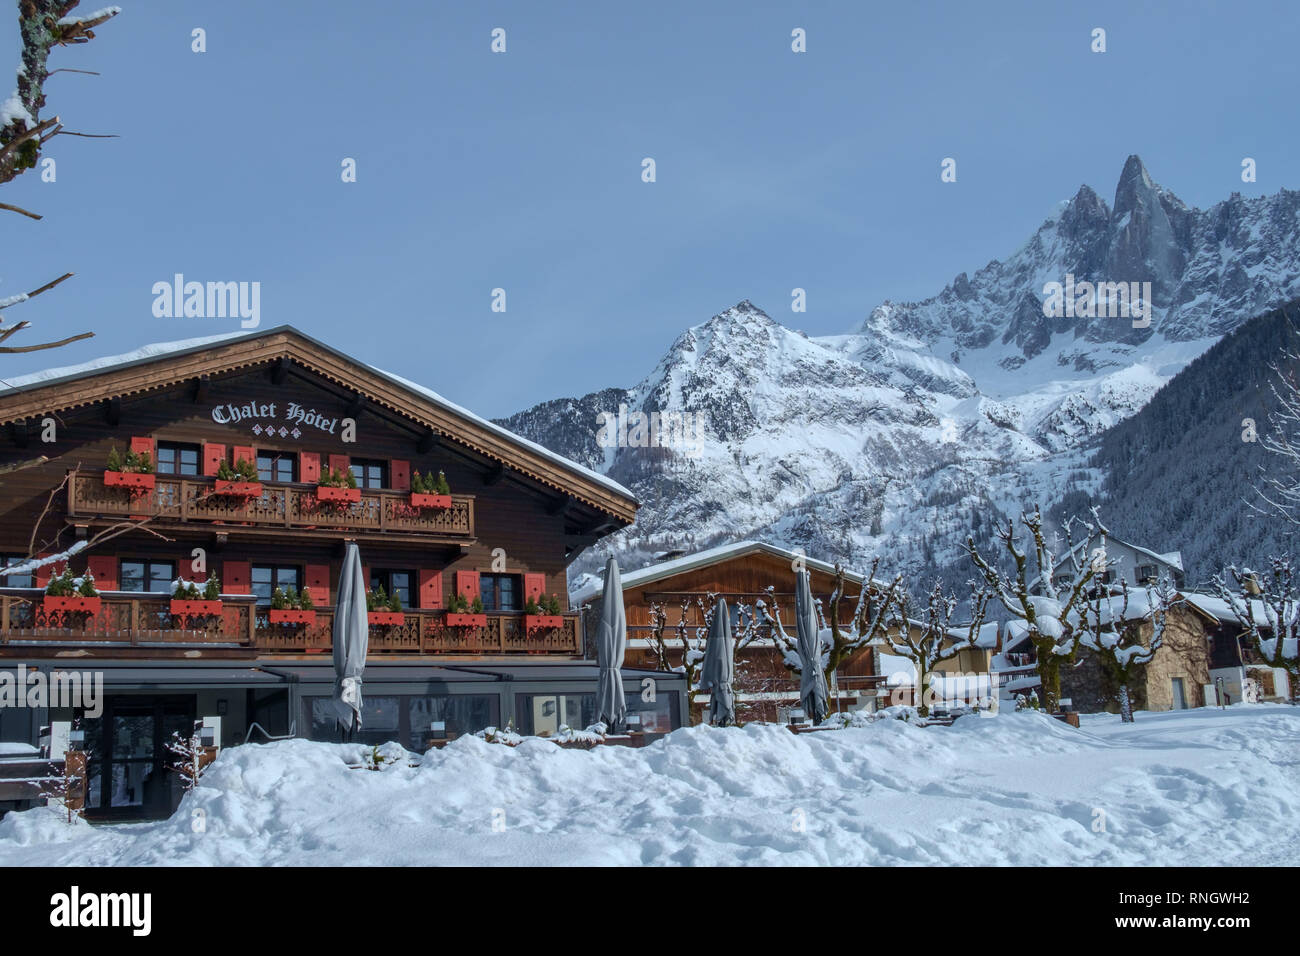 Chamonix Mont Blanc, France - 8 Février 2019 : Chalets et grandes montagnes - typique de la vallée de Chamonix. Banque D'Images